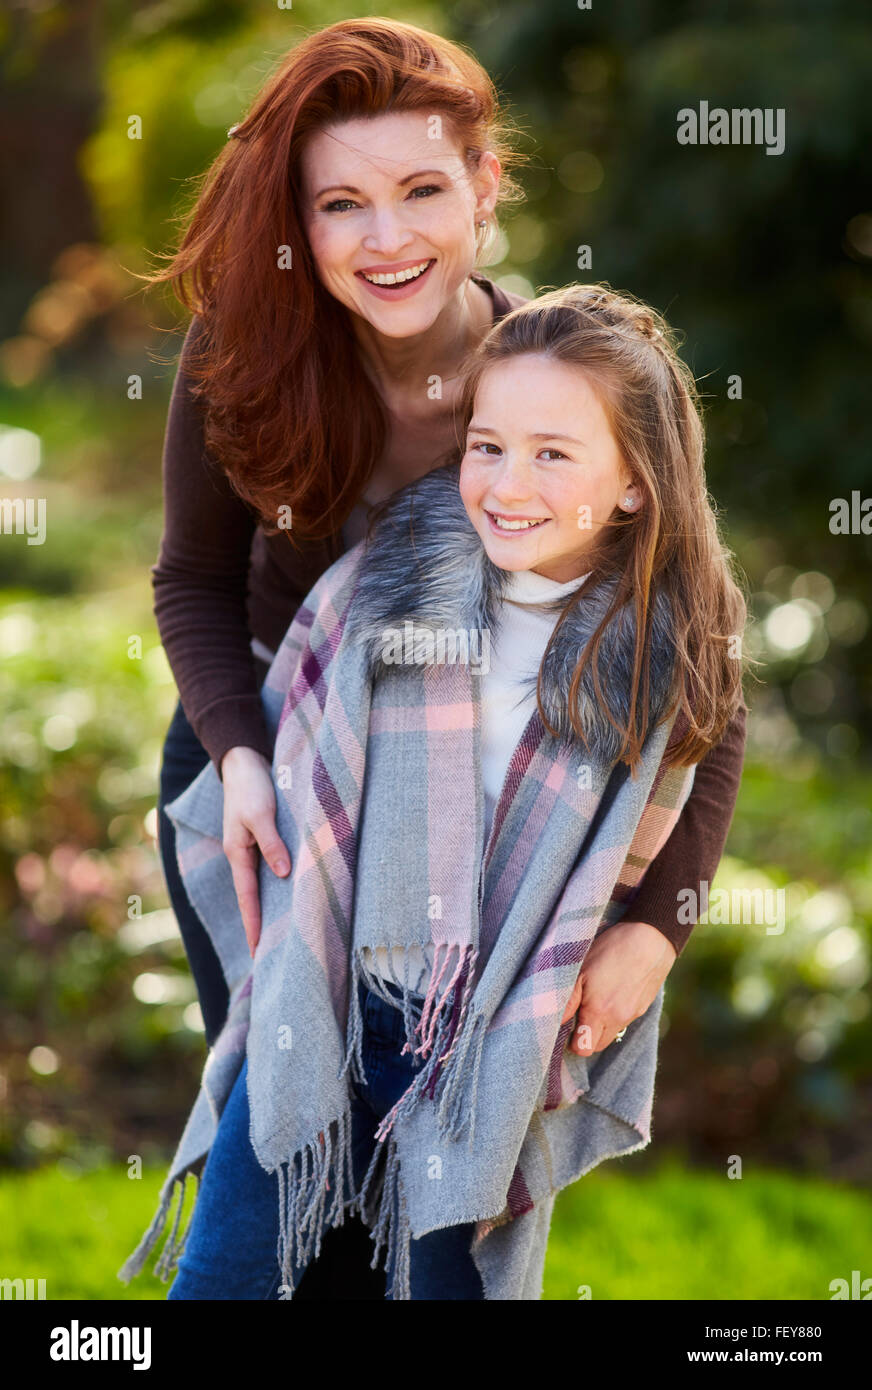 Mutter und Tochter standen gemeinsam Lächeln Stockfoto